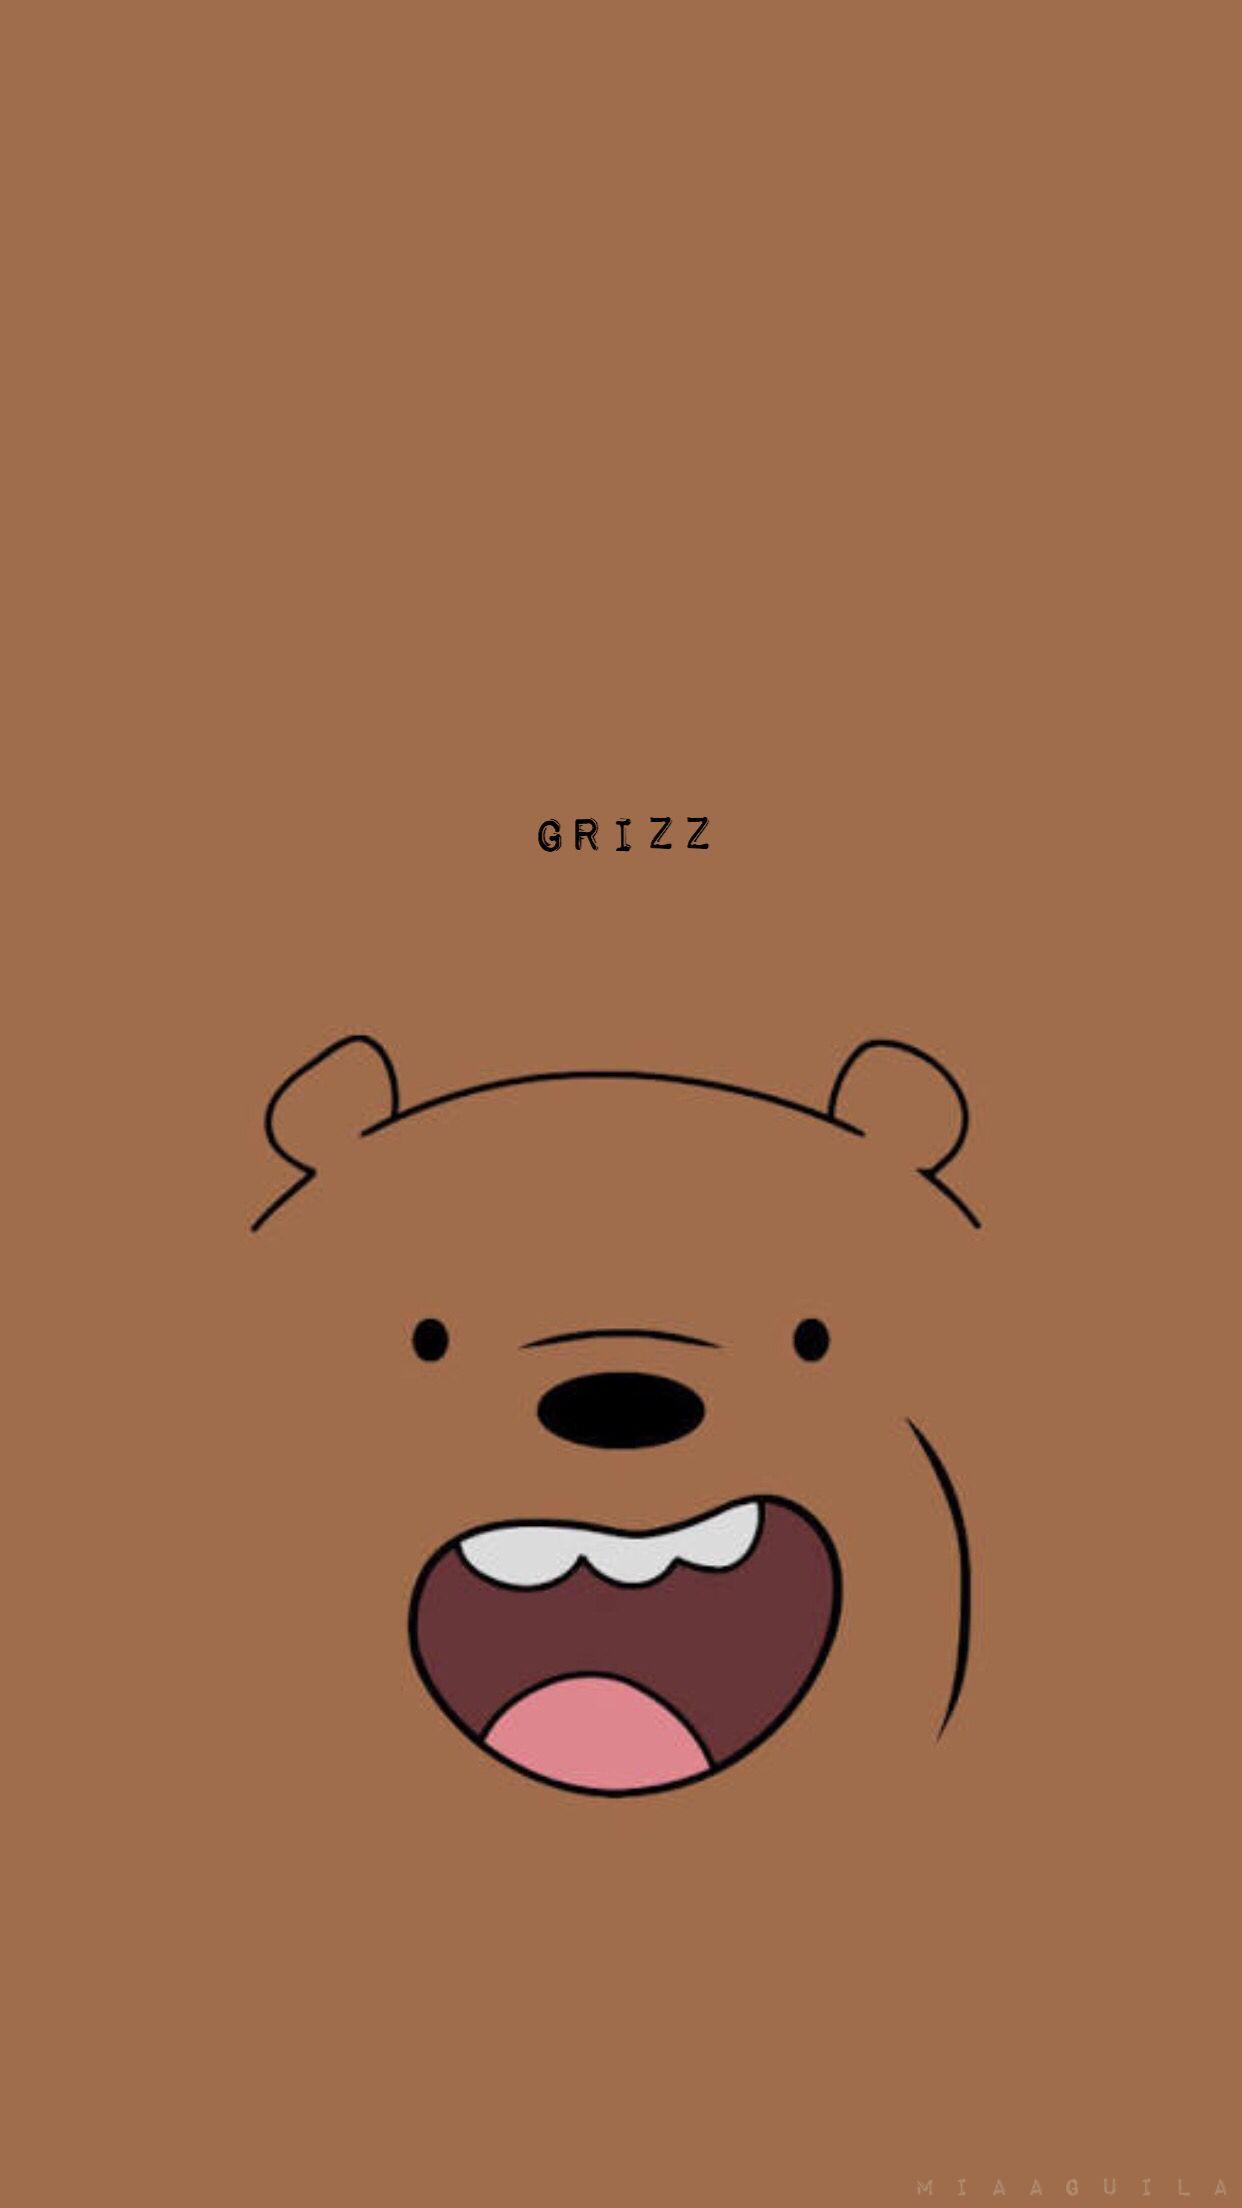 We Bare Bears wallpaper for phone! - We Bare Bears